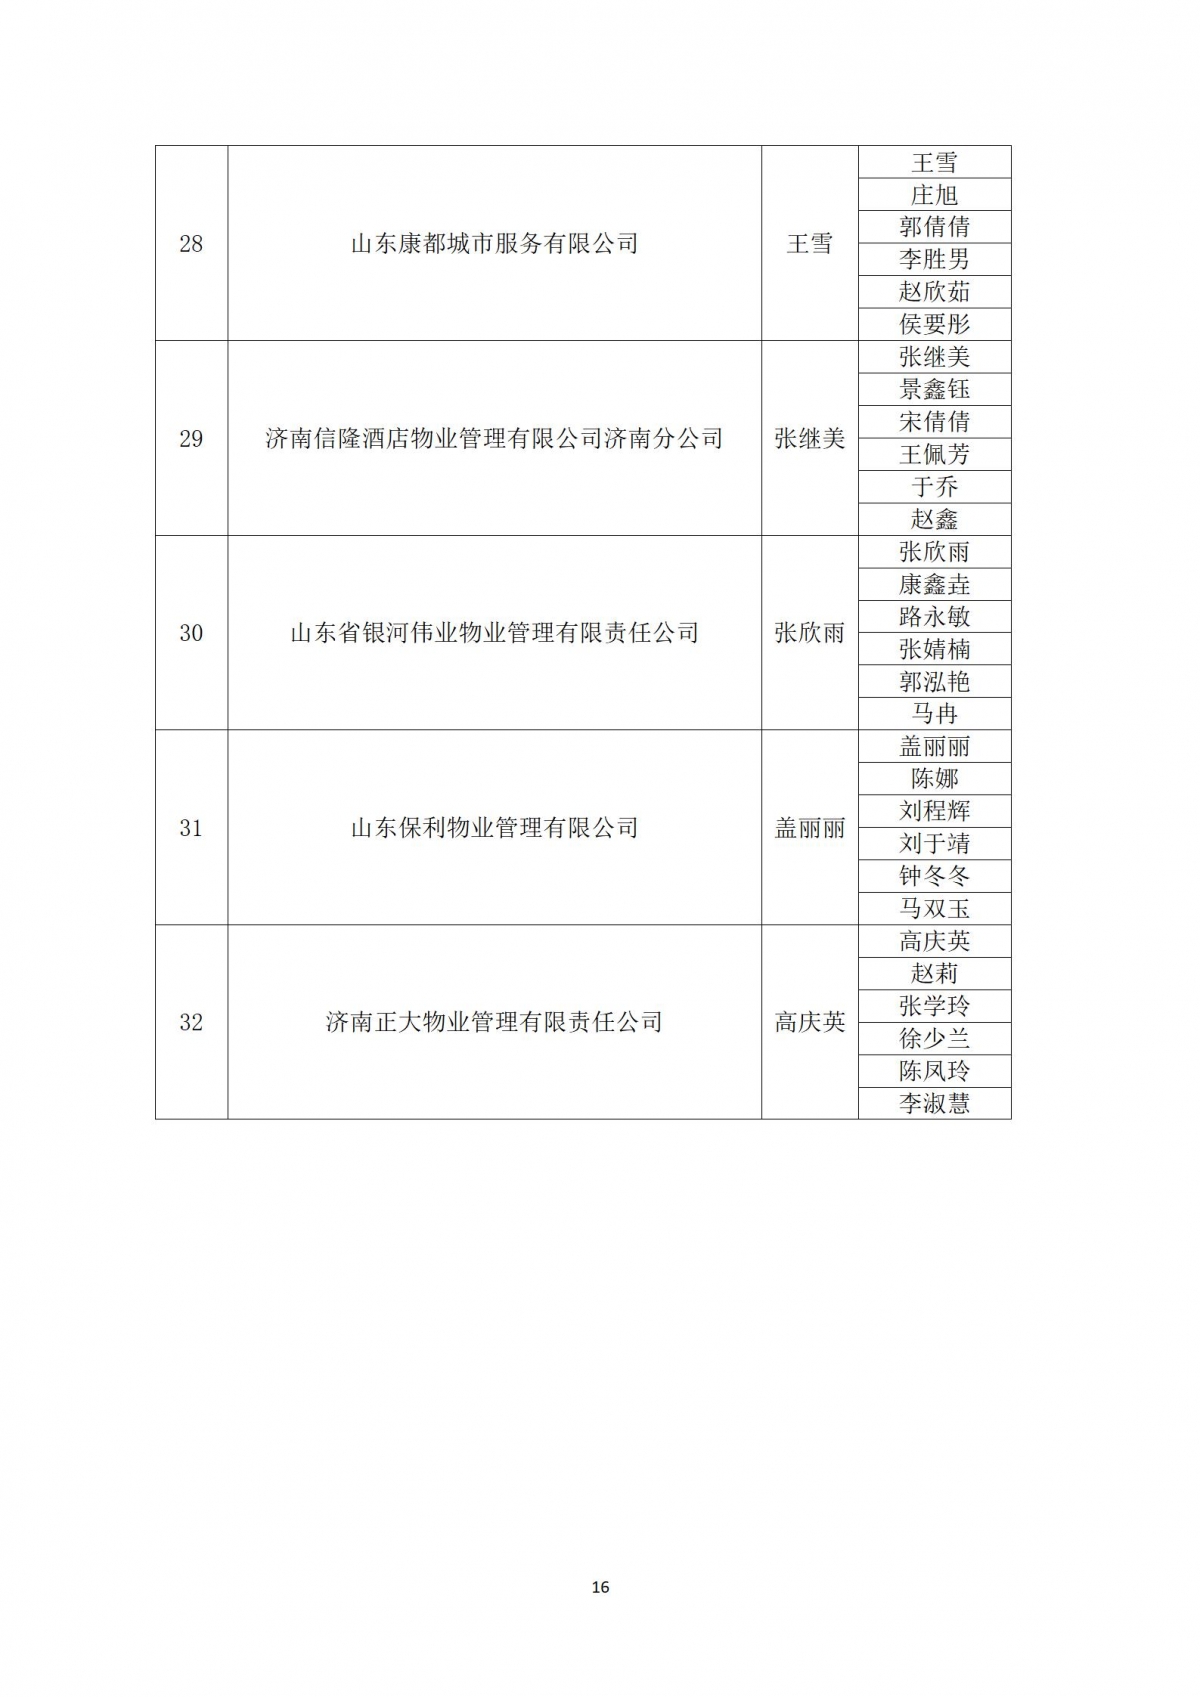 关于“天城杯”第七届济南市物业服务行业职业技能竞赛选手名单的公示_16